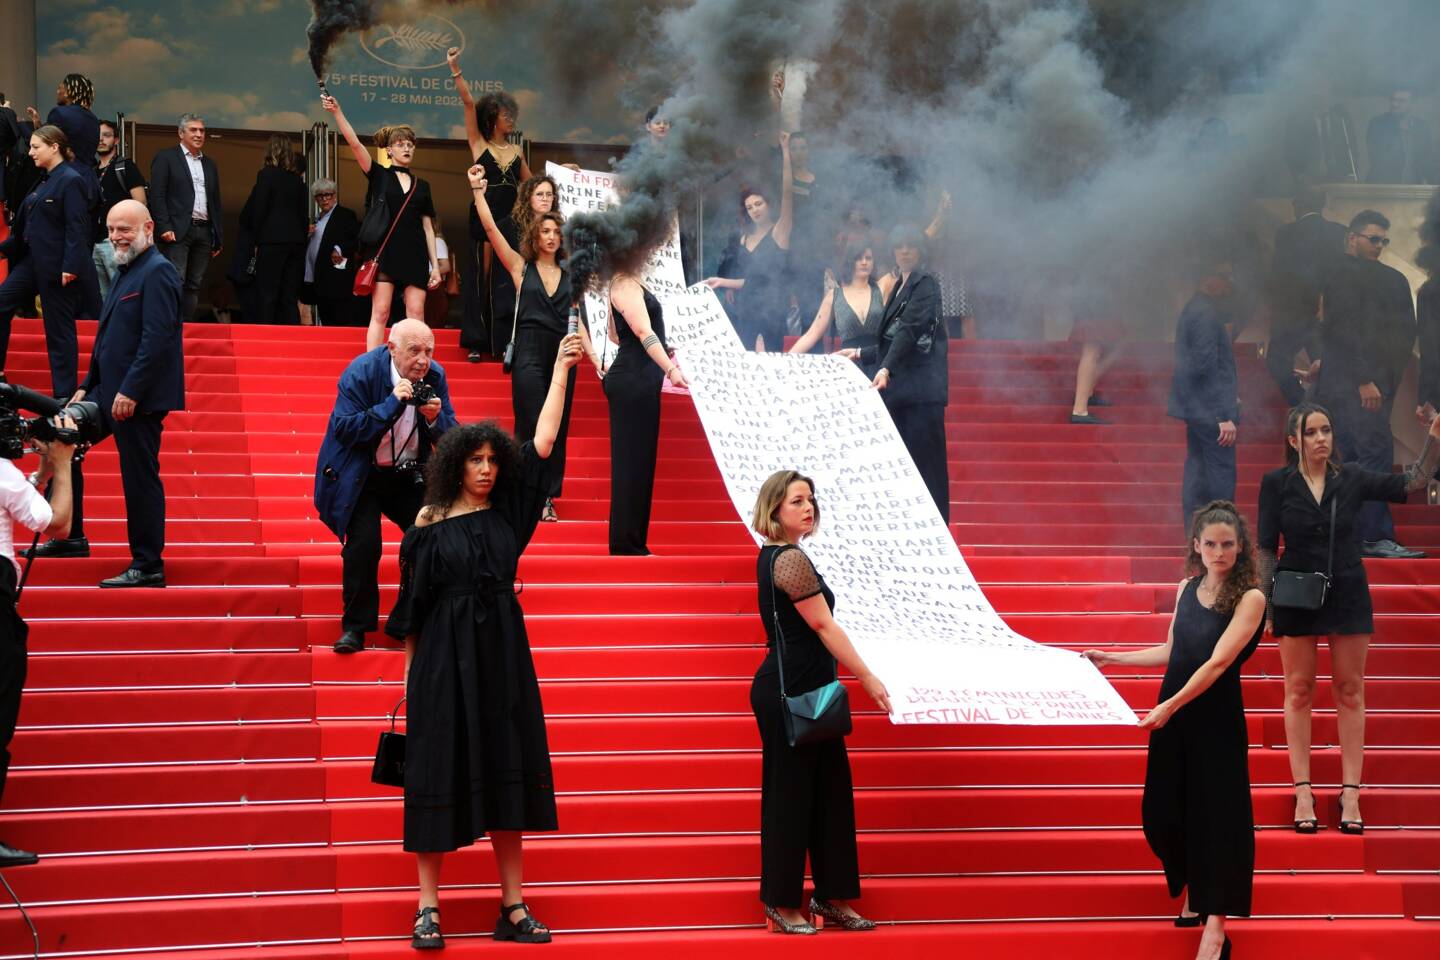 Vêtues de noir, les militantes ont pris la pose, le poing levé, avant d'utiliser des fumigènes, nimbant le tapis rouge de fumée noire.